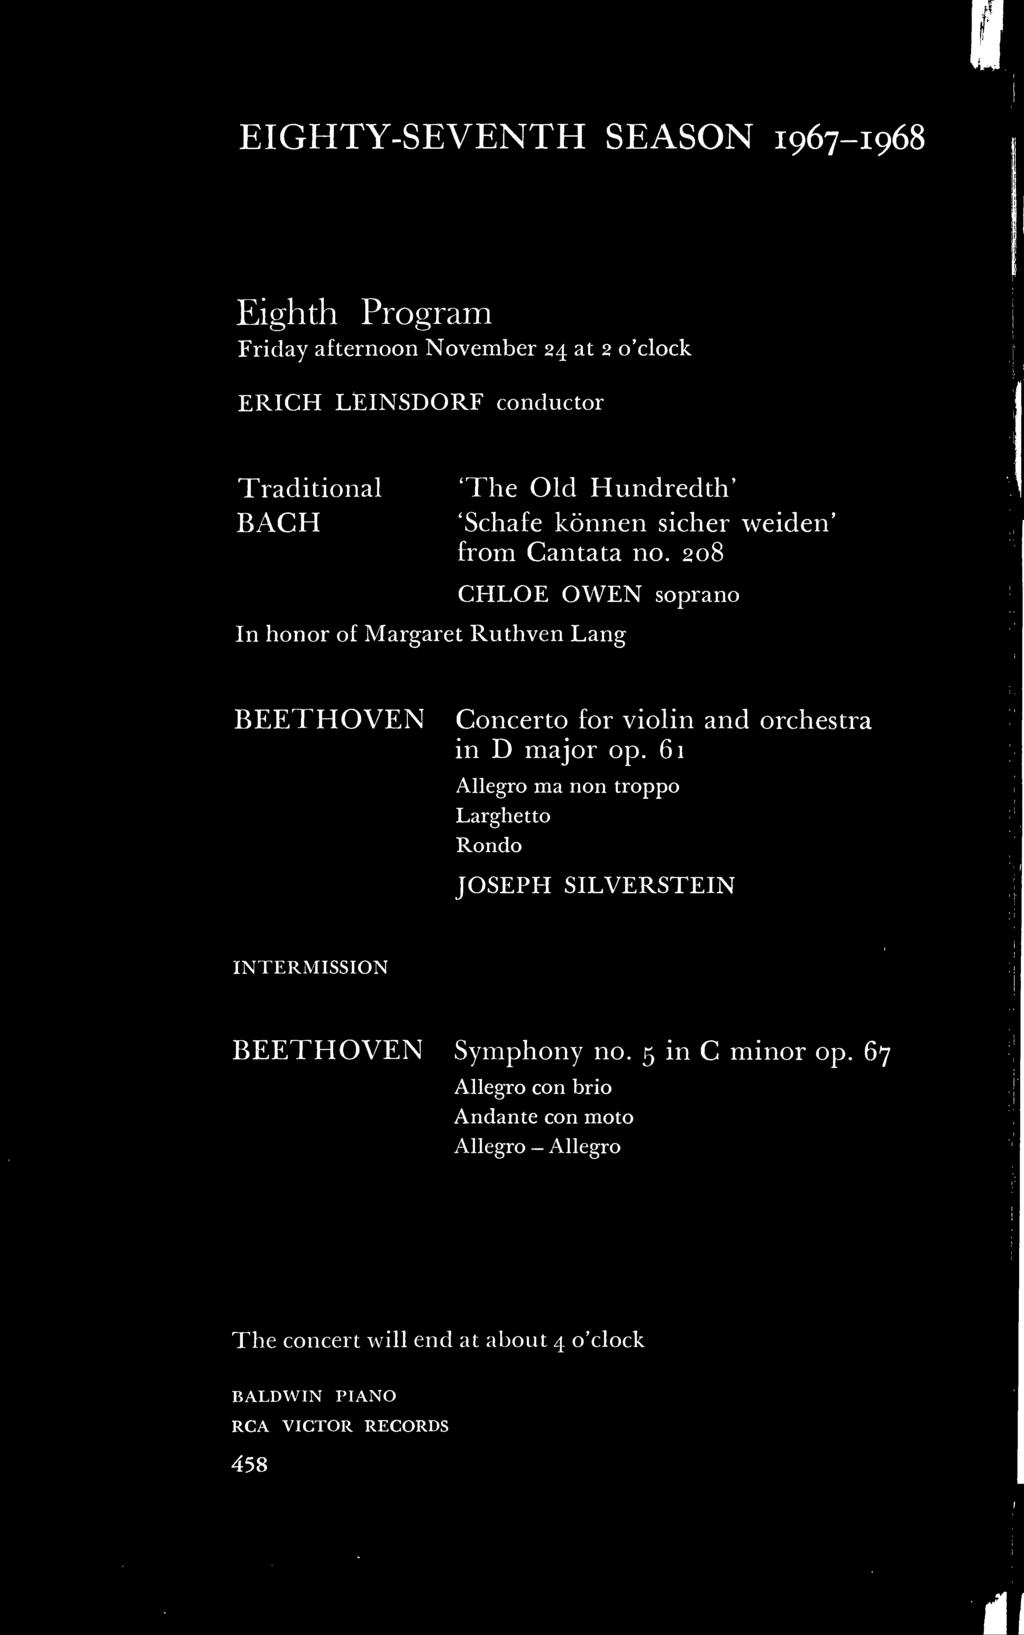 61 Allegro ma non troppo Larghetto Rondo JOSEPH SILVERSTEIN INTERMISSION BEETHOVEN Symphony